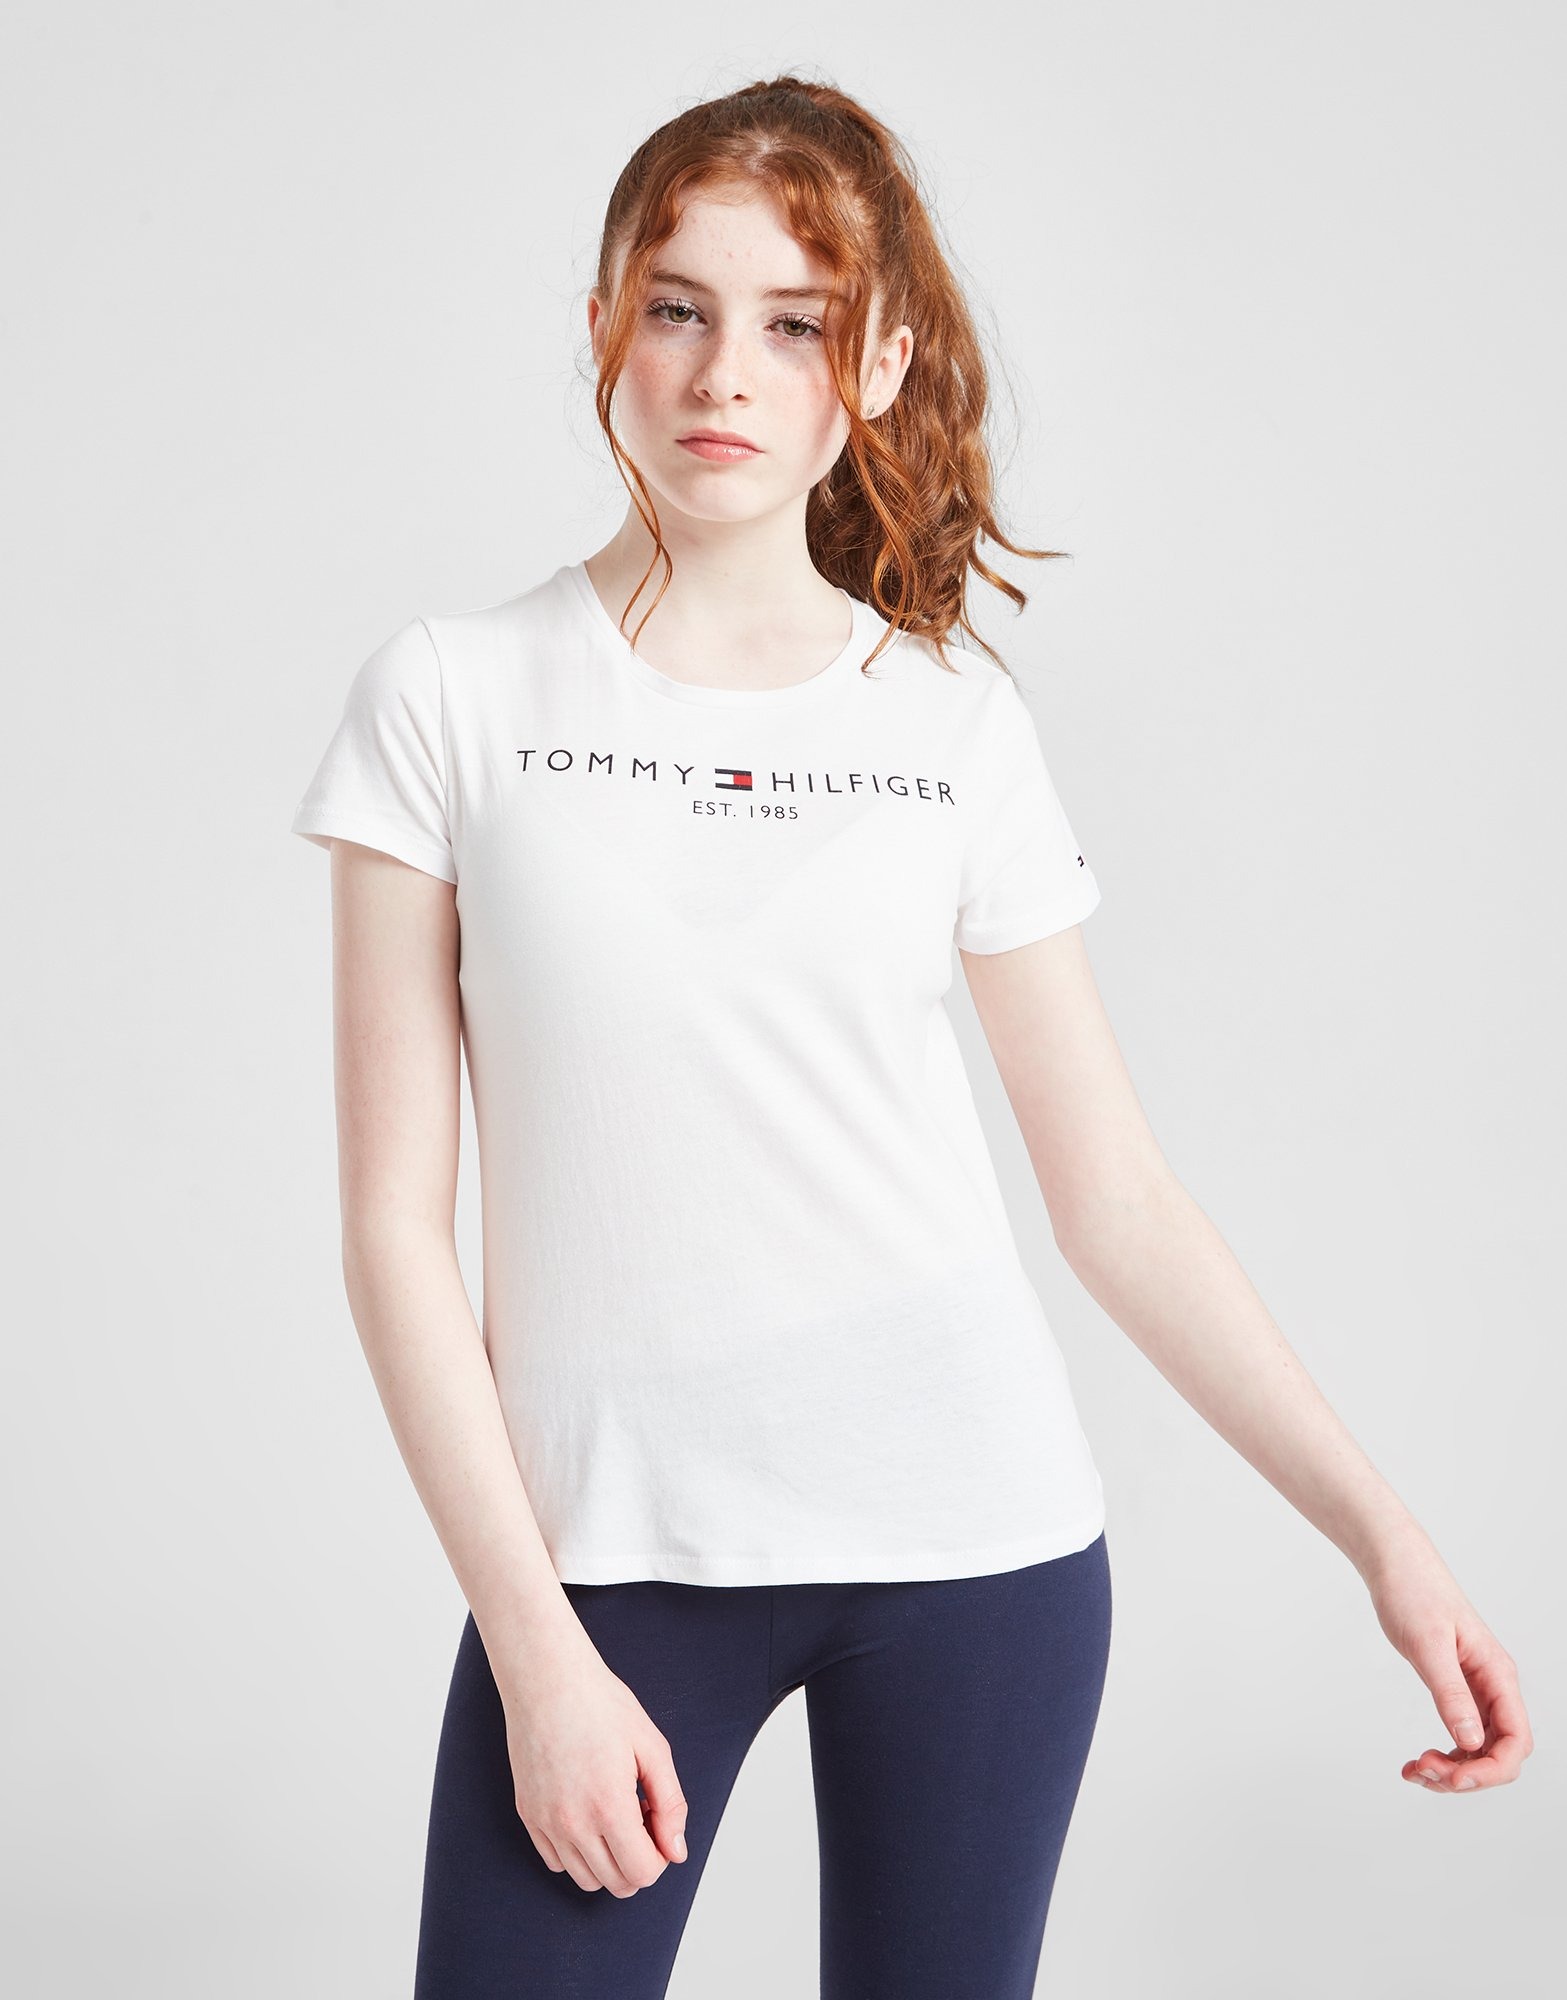 Tommy Hilfiger Girls' Essential T-Shirt Kinder Weiss - JD Sports Deutschland